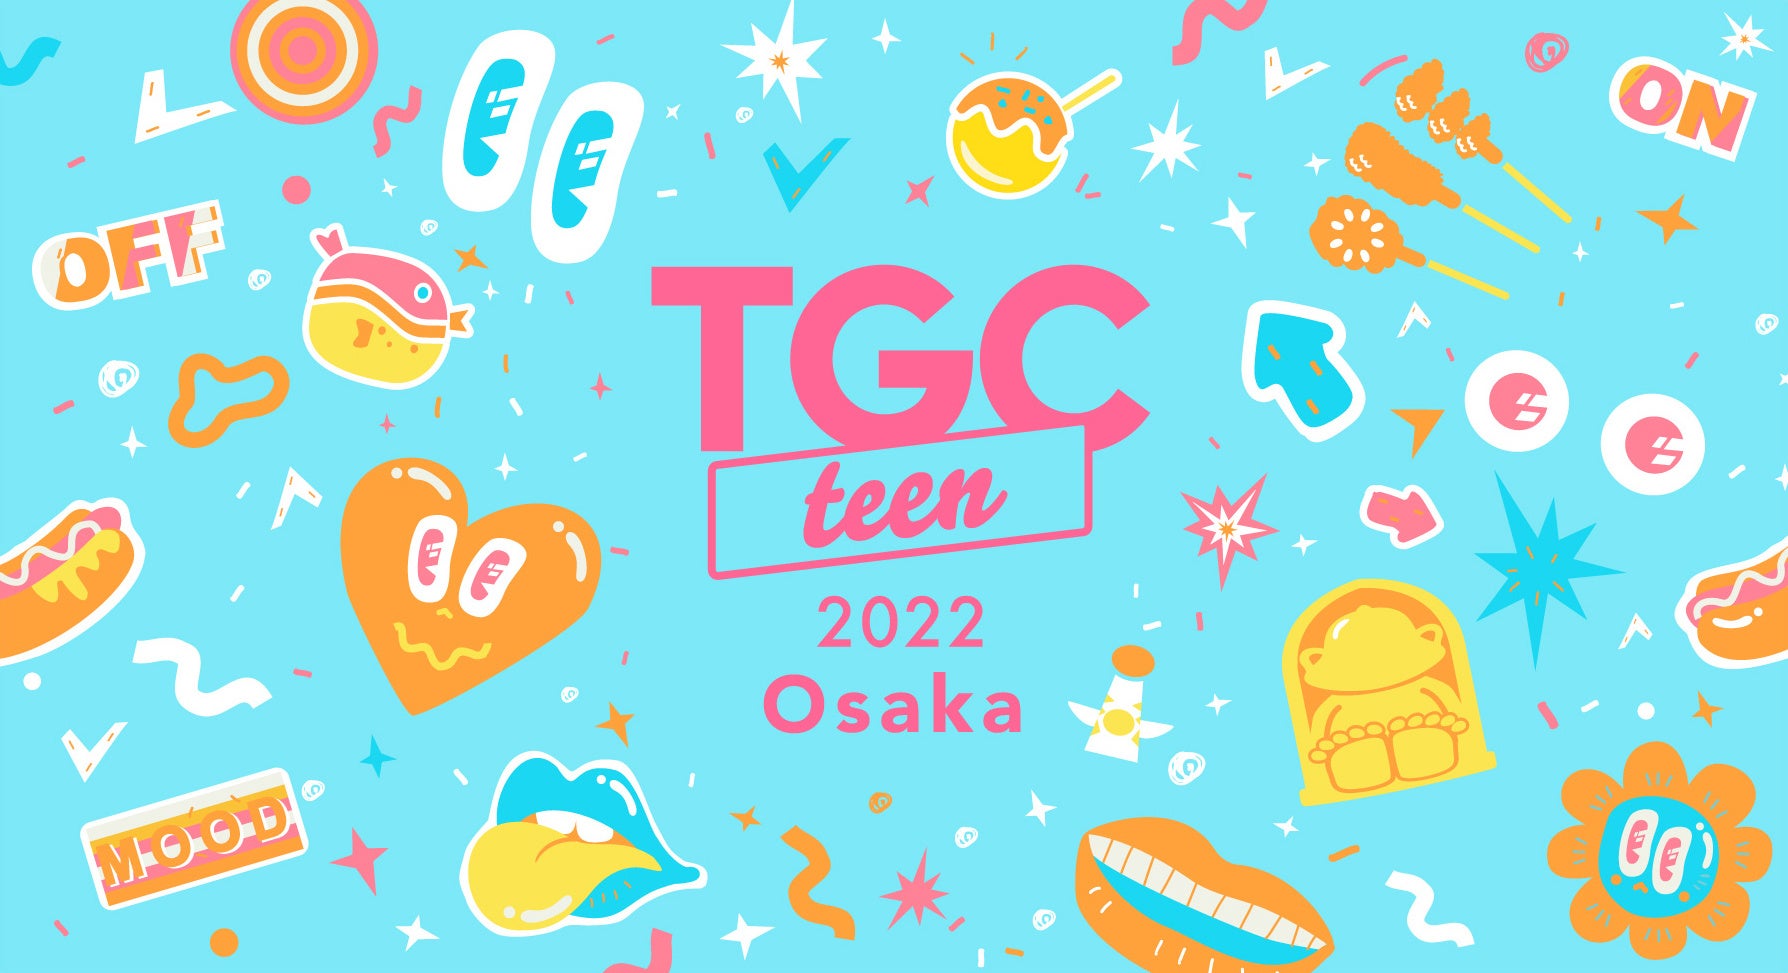 東京ガールズコレクションがプロデュースする“令和teen”のためのガールズフェスタ！TGC teen初の大阪開催『TGC teen 2022 Osaka』が8月11日に決定！チケットの抽選販売受付中！